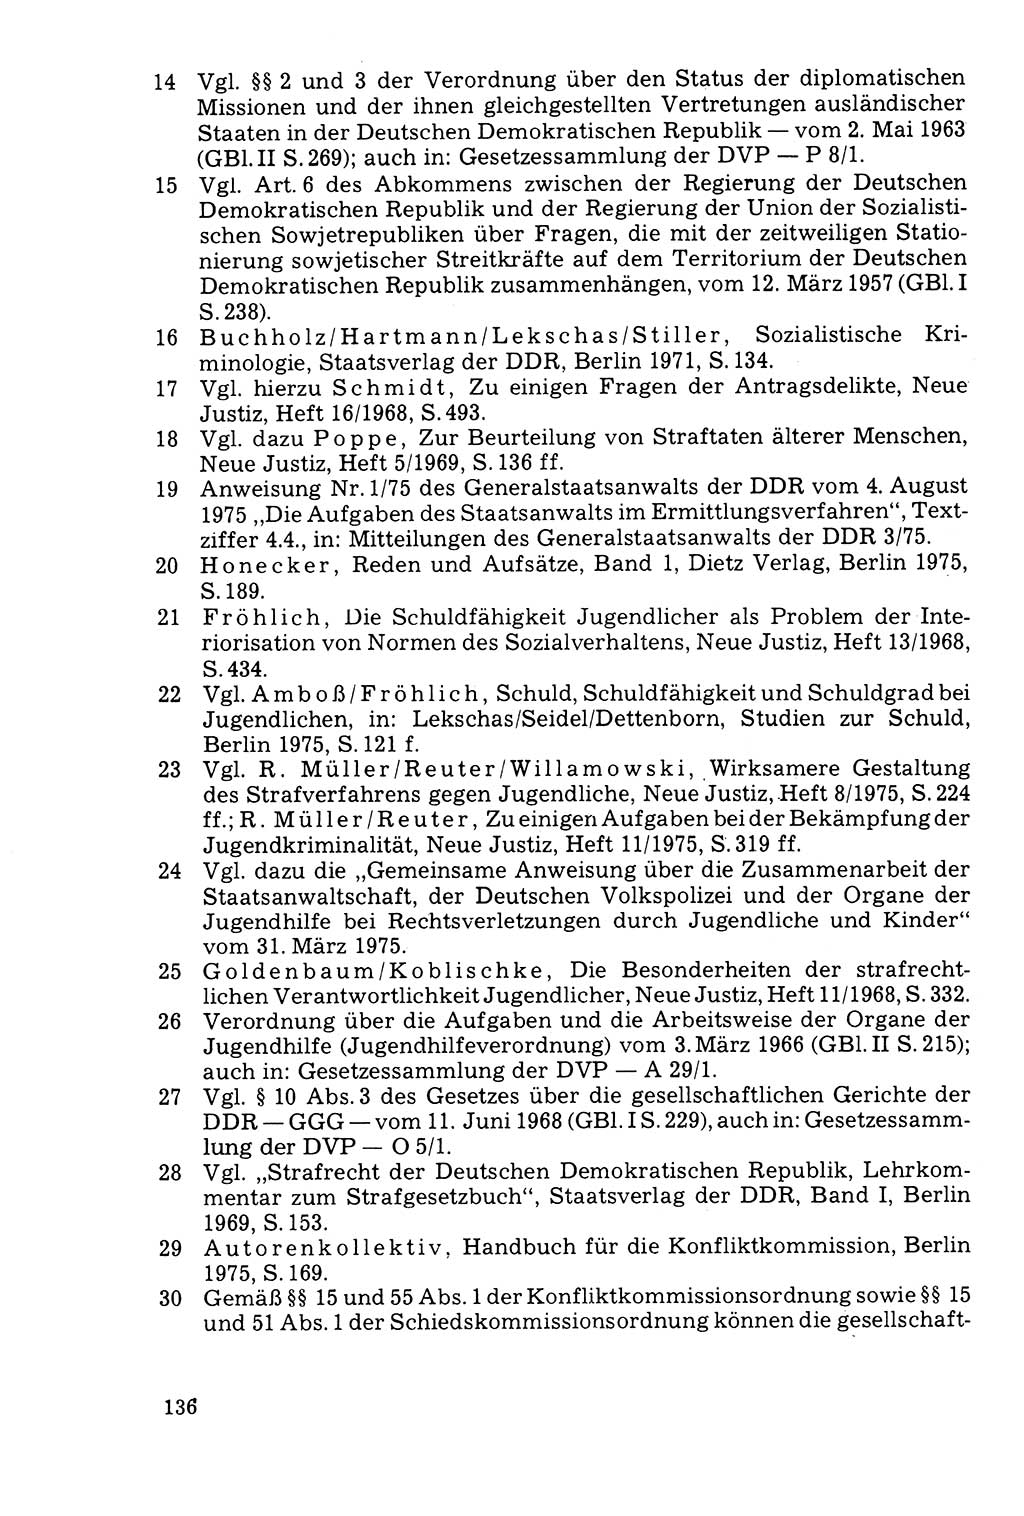 Der Abschluß des Ermittlungsverfahrens [Deutsche Demokratische Republik (DDR)] 1978, Seite 136 (Abschl. EV DDR 1978, S. 136)